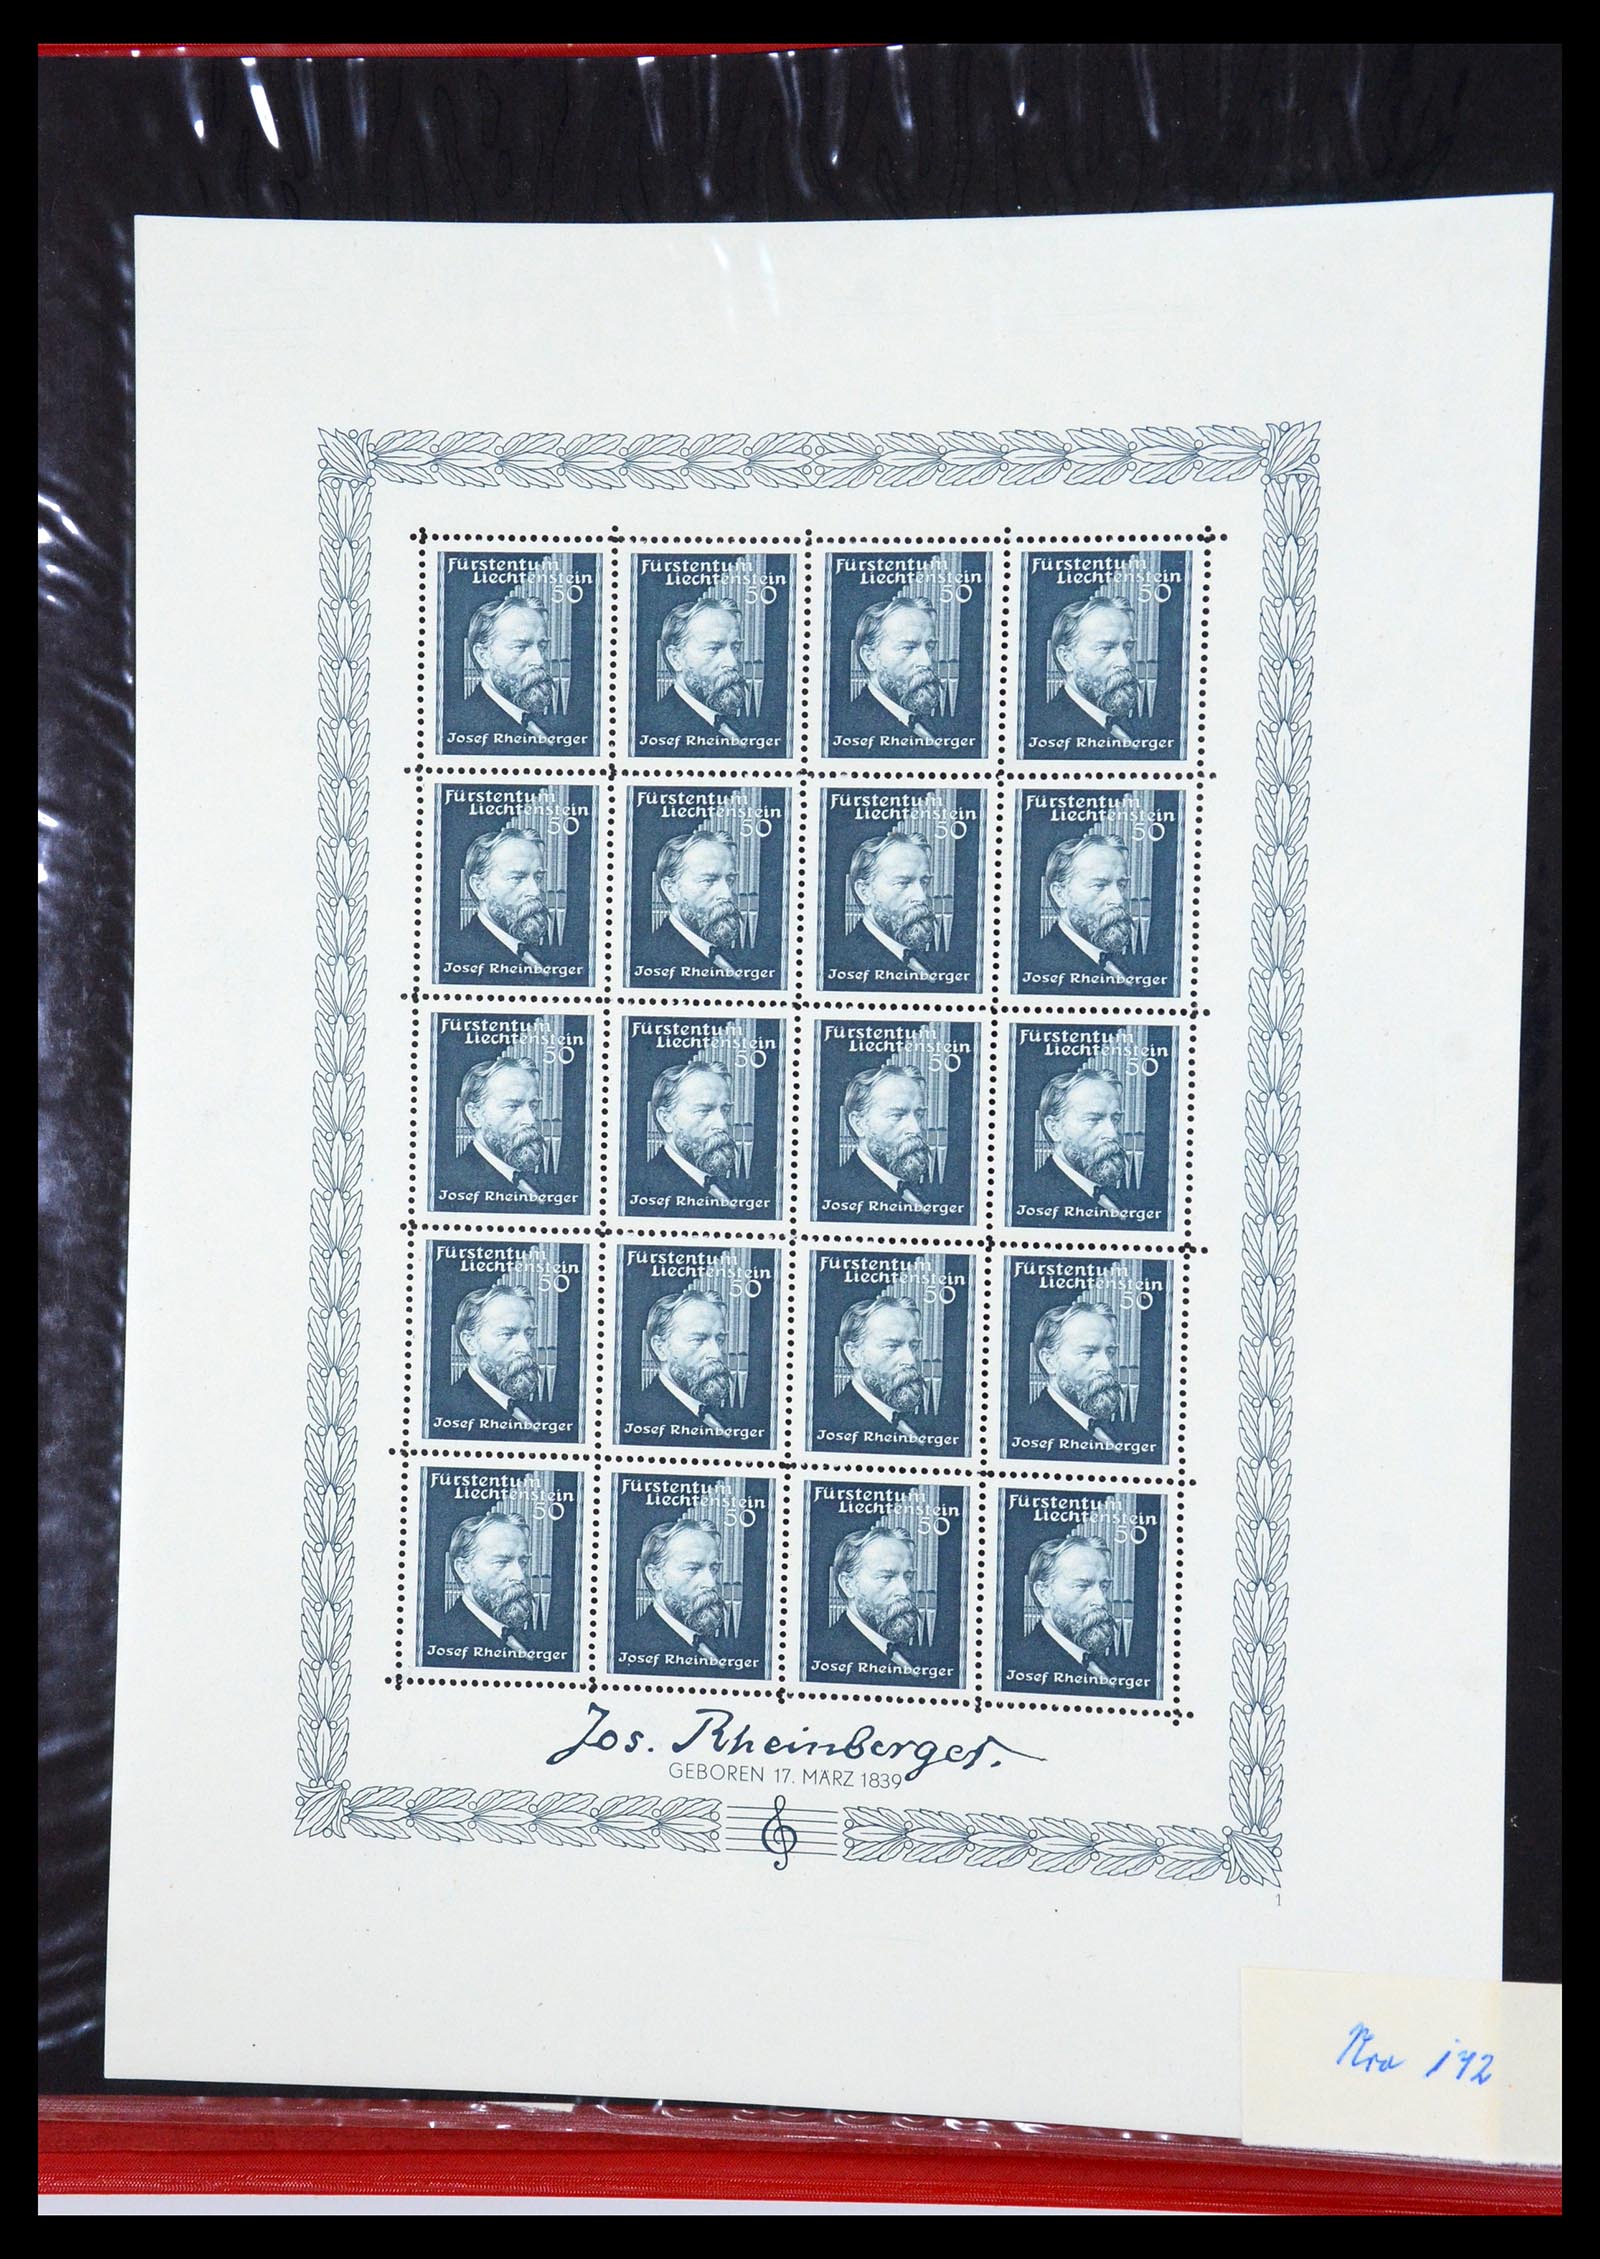 36280 002 - Stamp collection 36280 Liechtenstein souvenir sheets and sheetlets 1934-